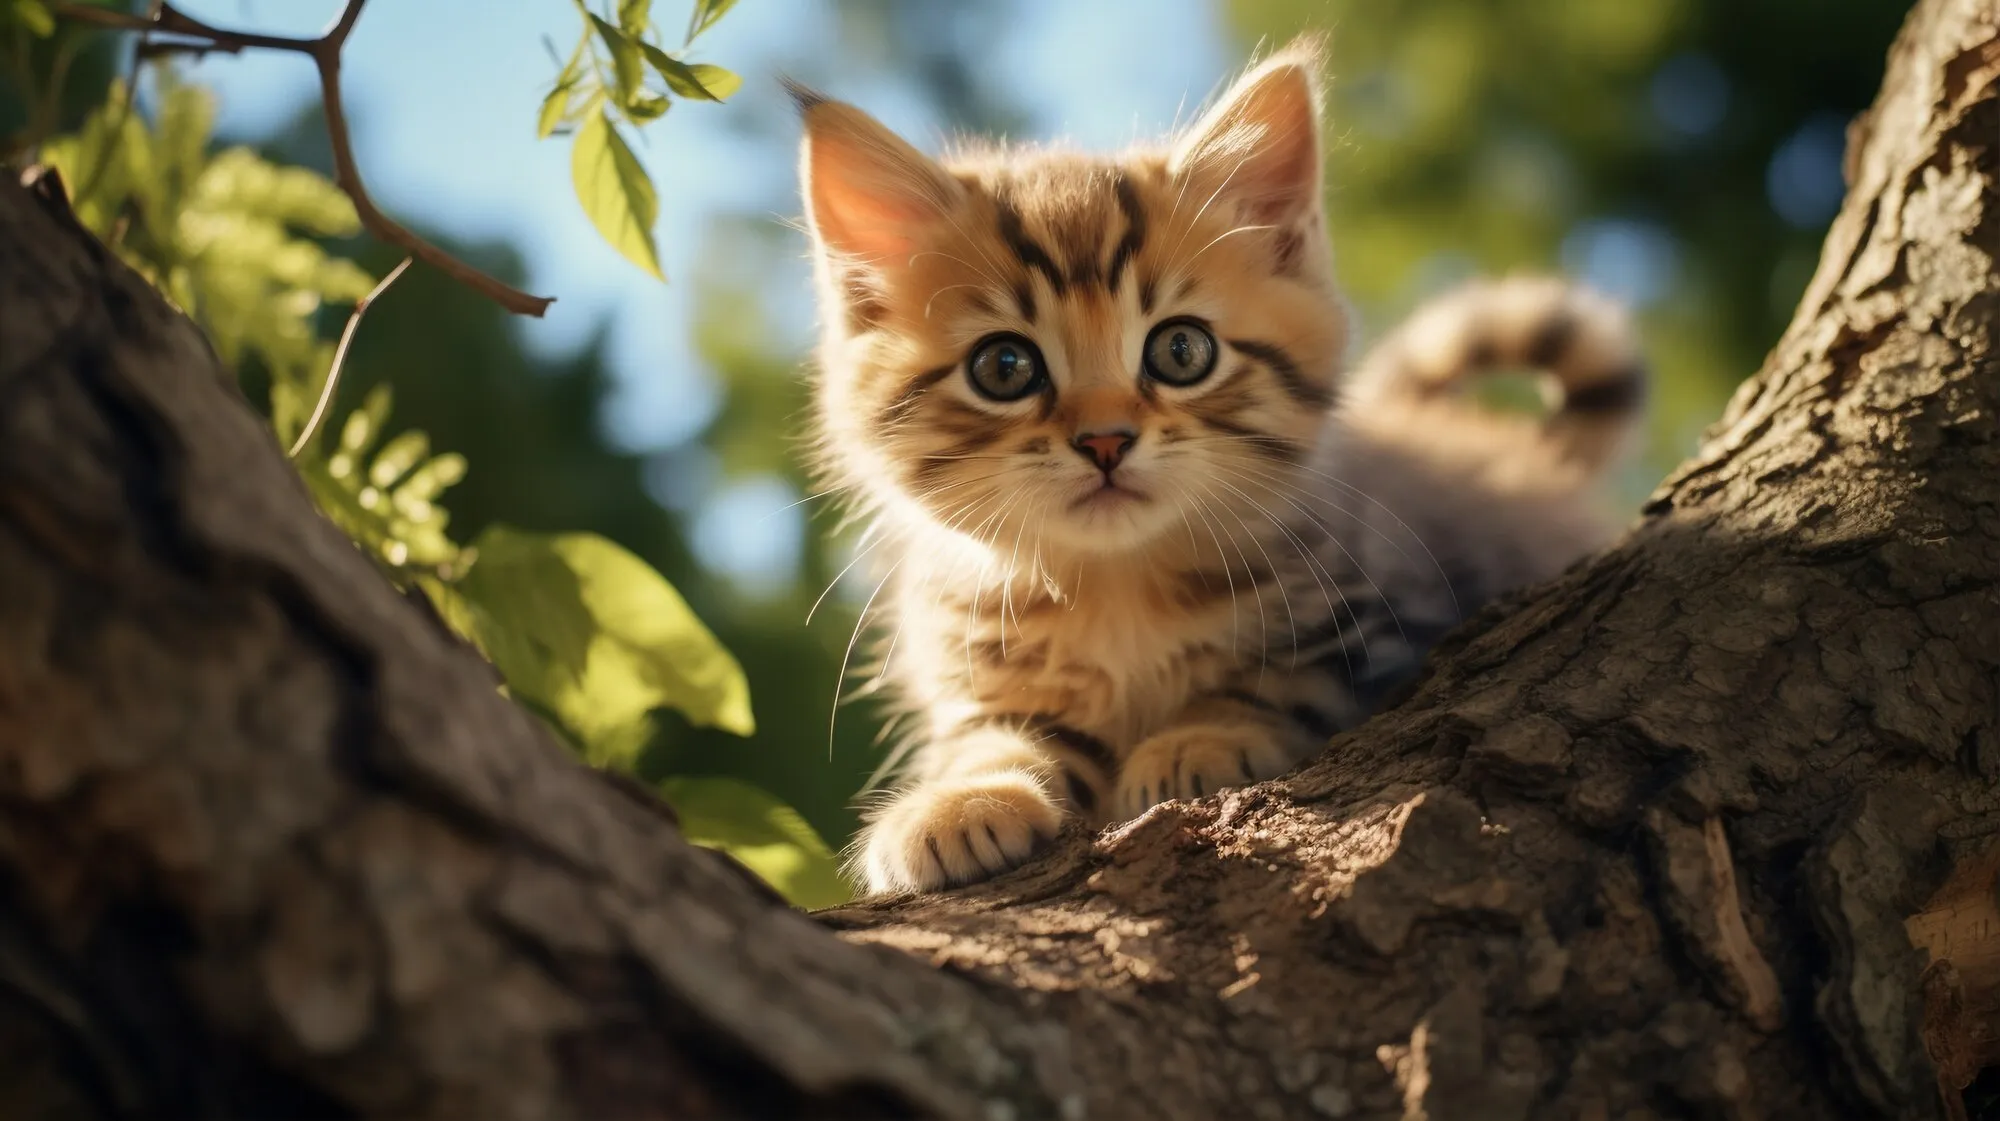 Puun vangitseminen: miksi kissat eivät aina pääse alas puusta?